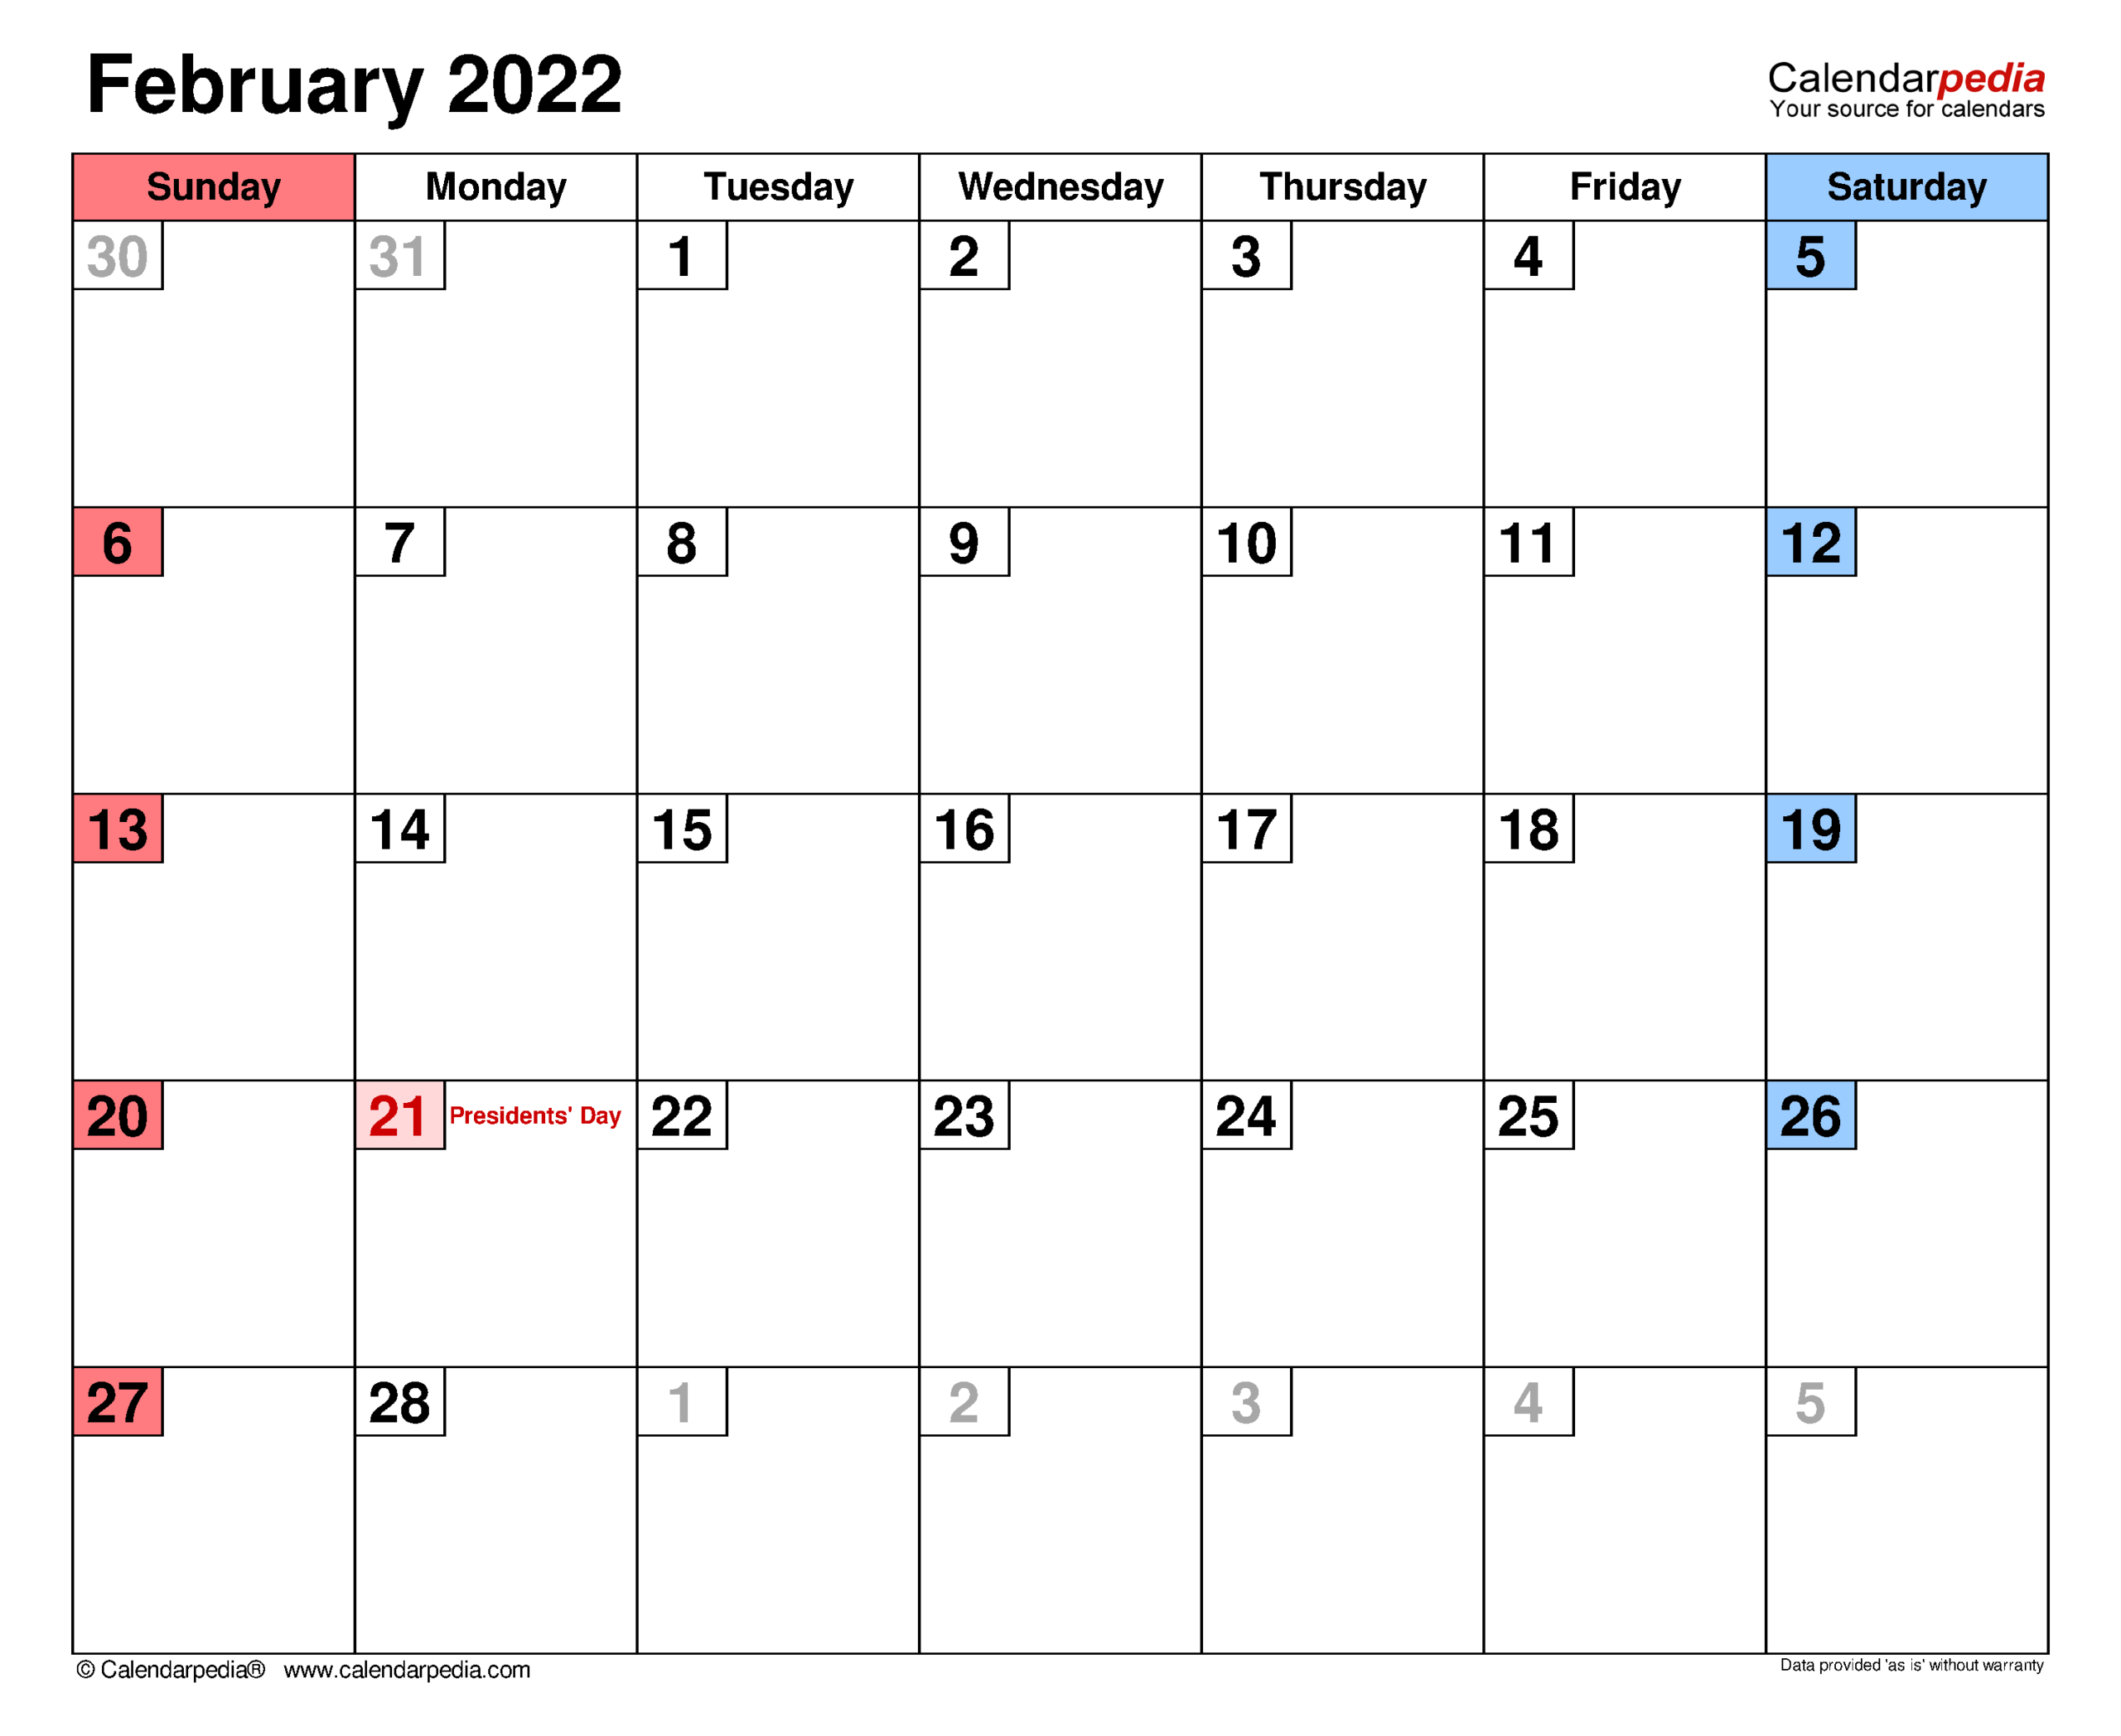 Get Free Calendar For February 2022